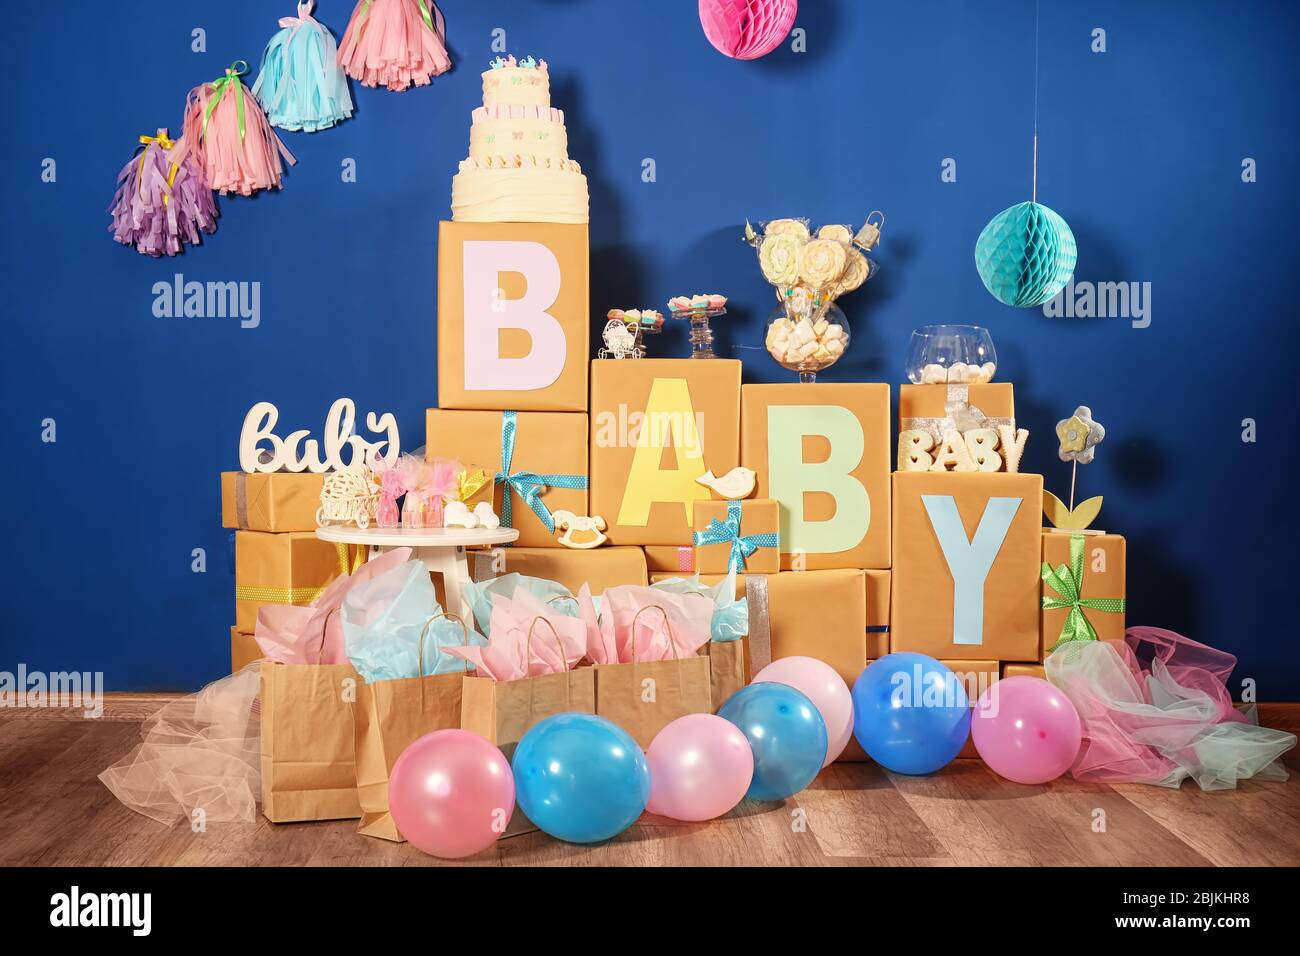 Regalos y decoraciones para fiestas de baby shower en interiores.